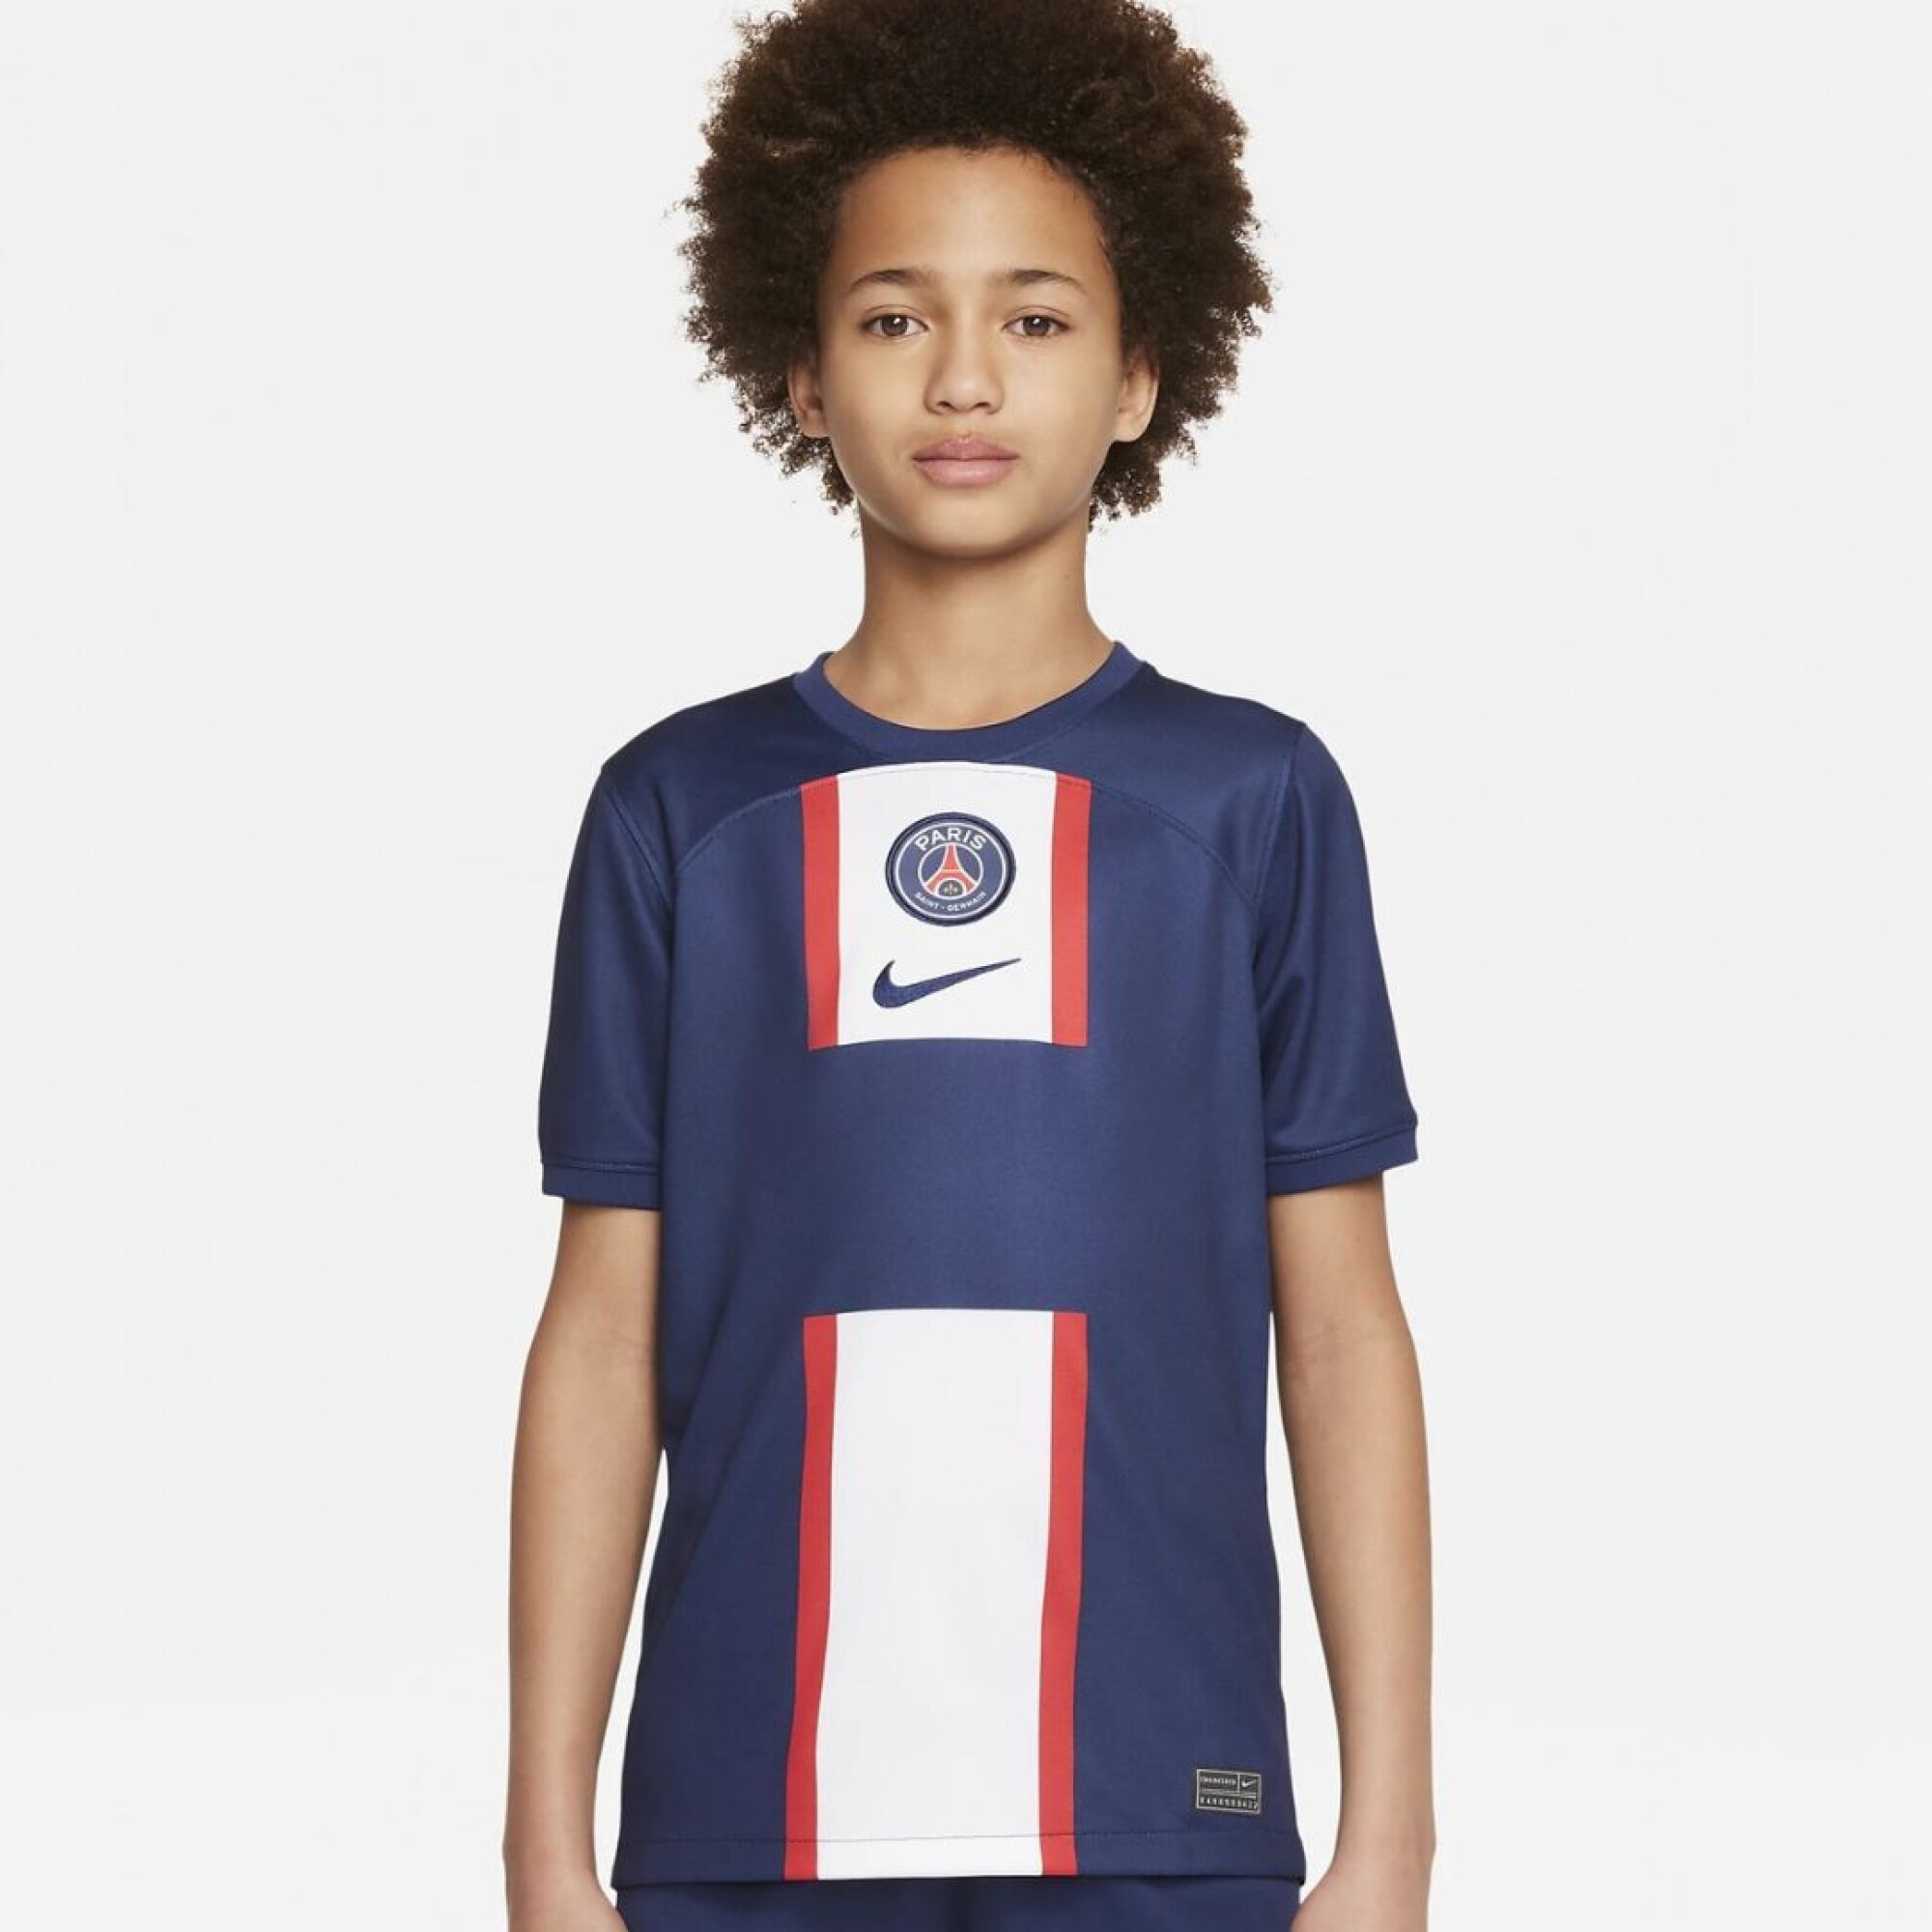 Camiseta Nike Futbol Niño PSG YNK - S/C — Menpi